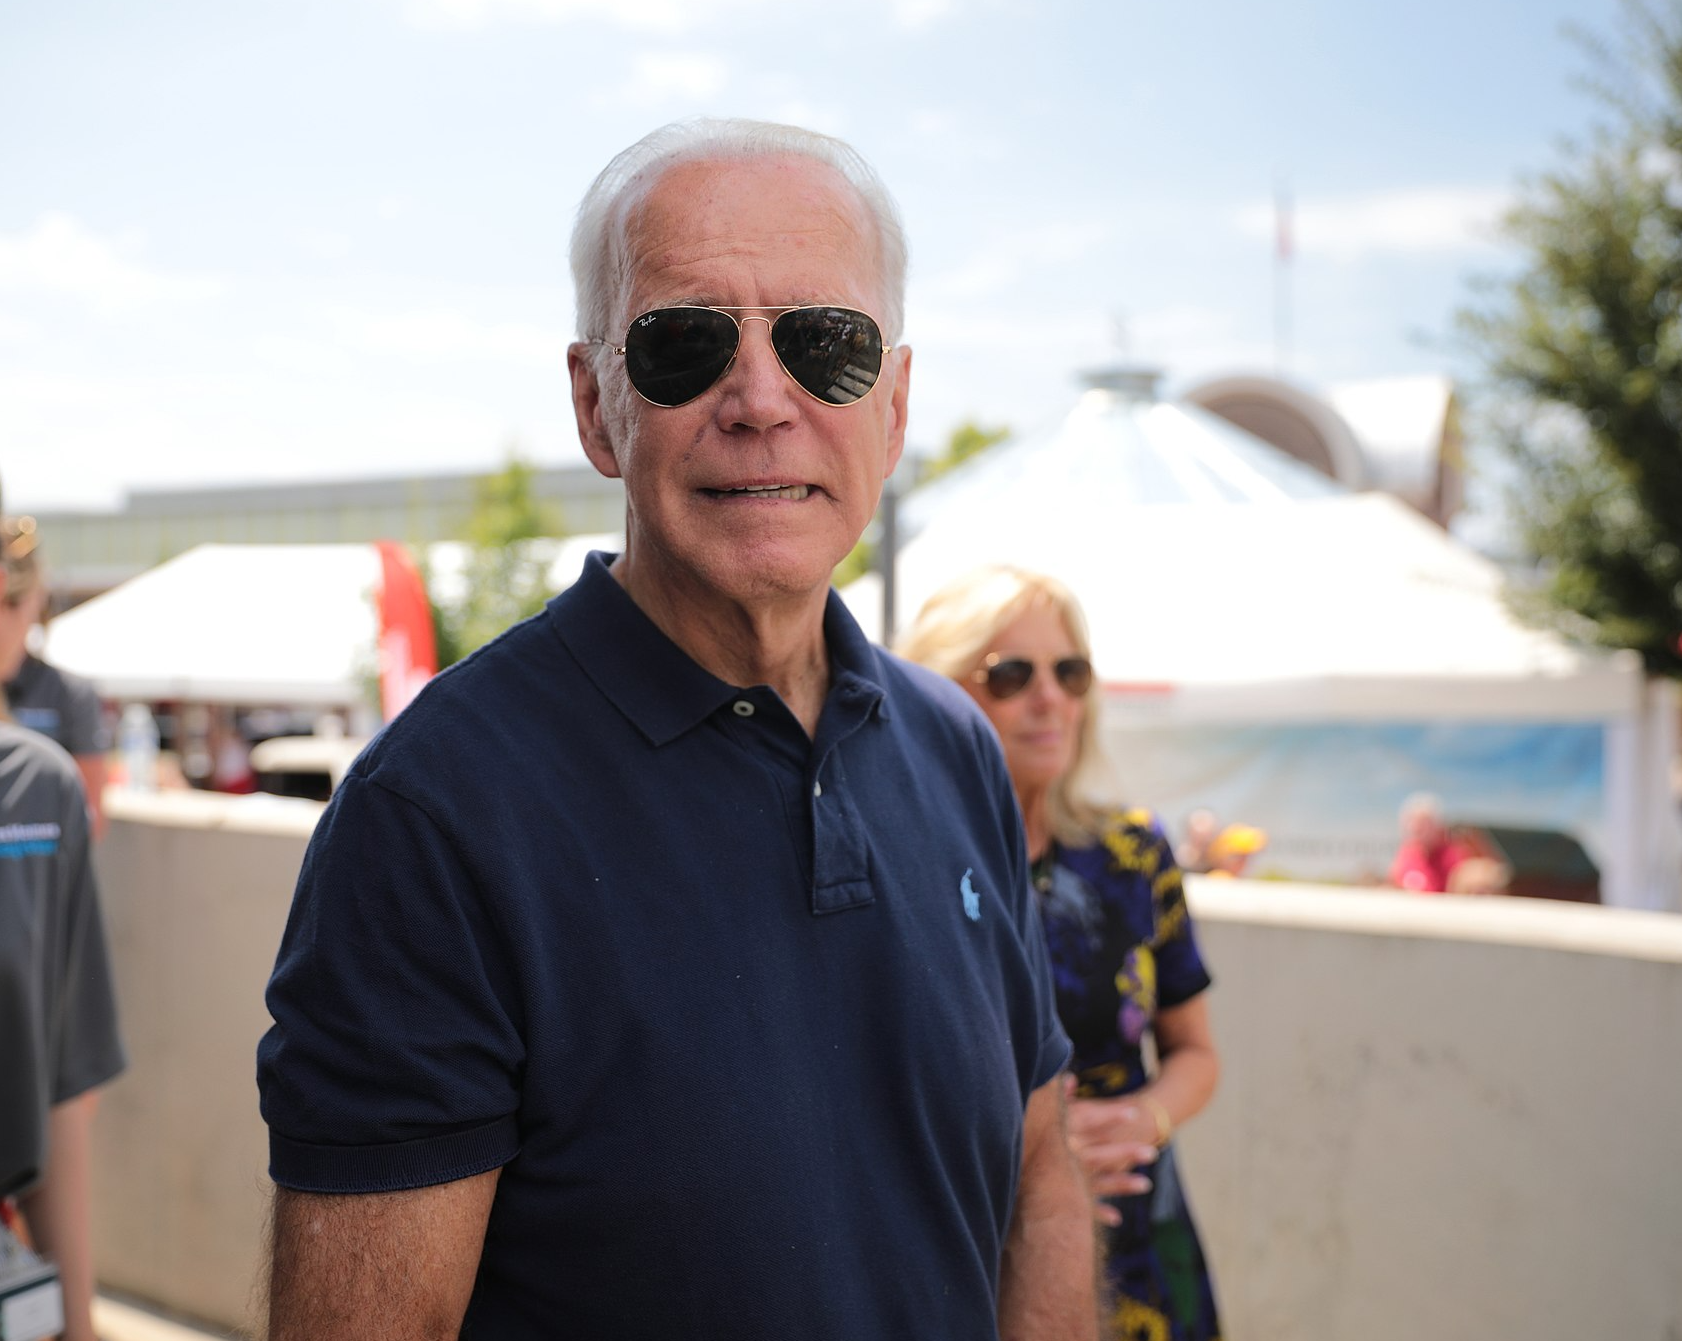 Joe Biden, A Very Dull President